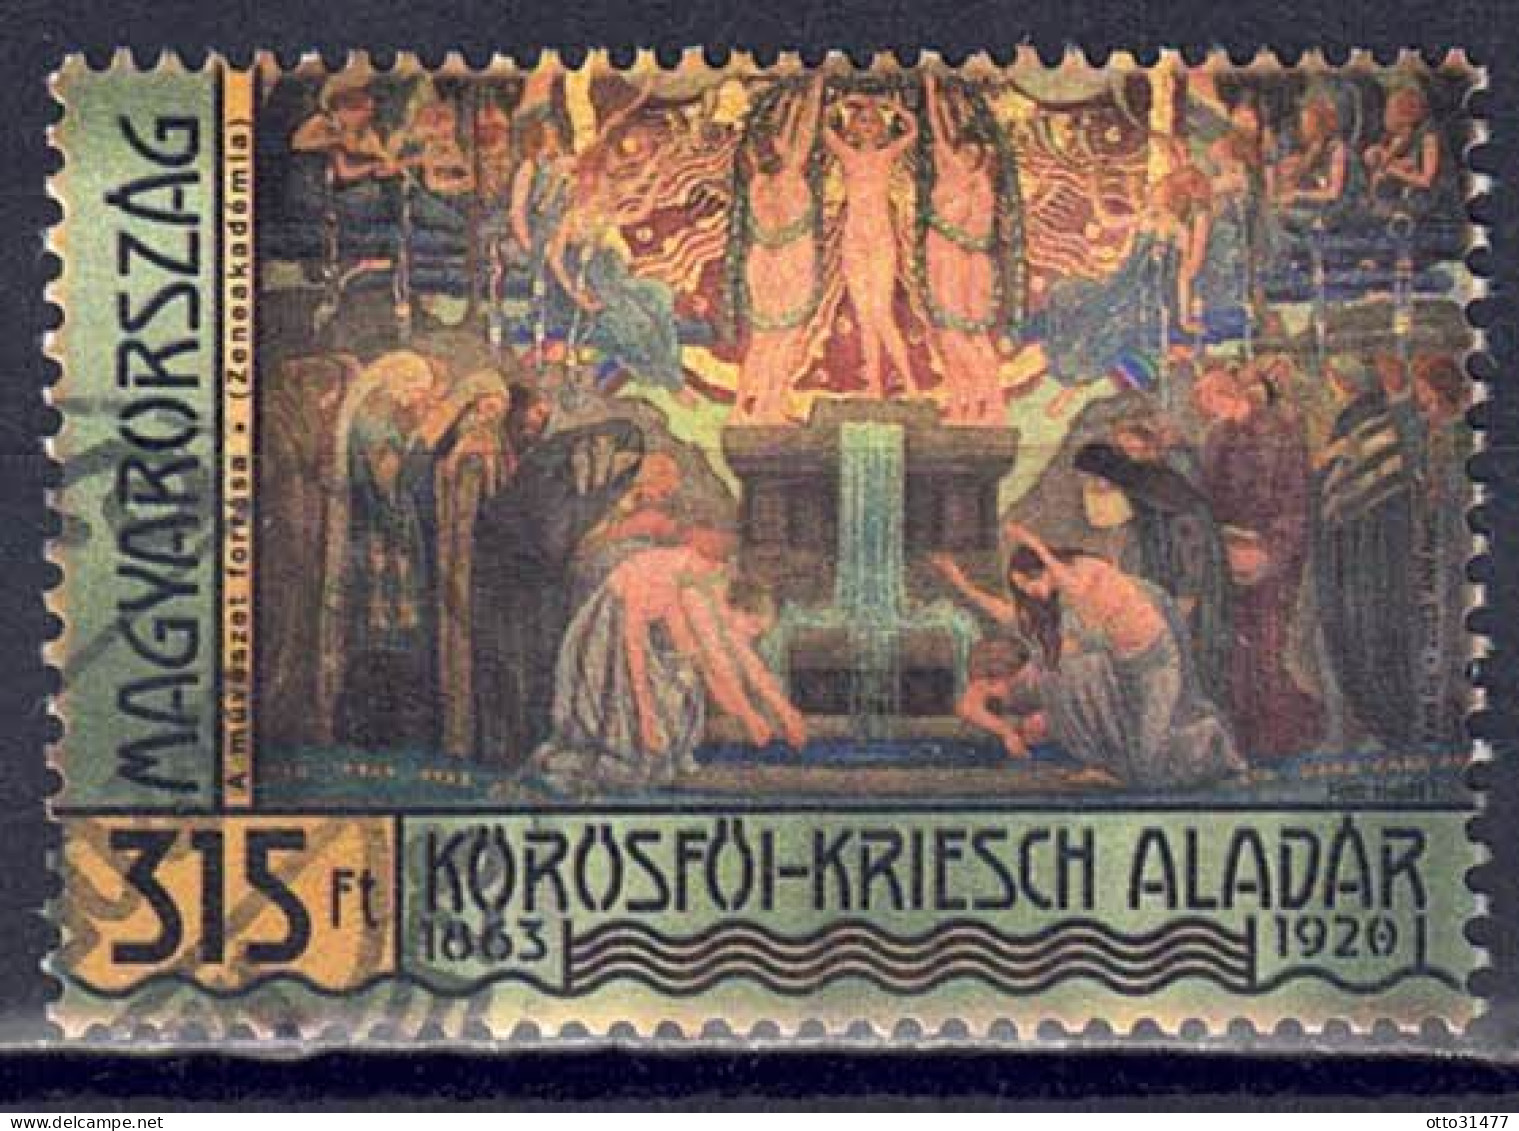 Ungarn 2013 - Aladár Körösföi-Kriesch, Nr. 5657, Gestempelt / Used - Usado